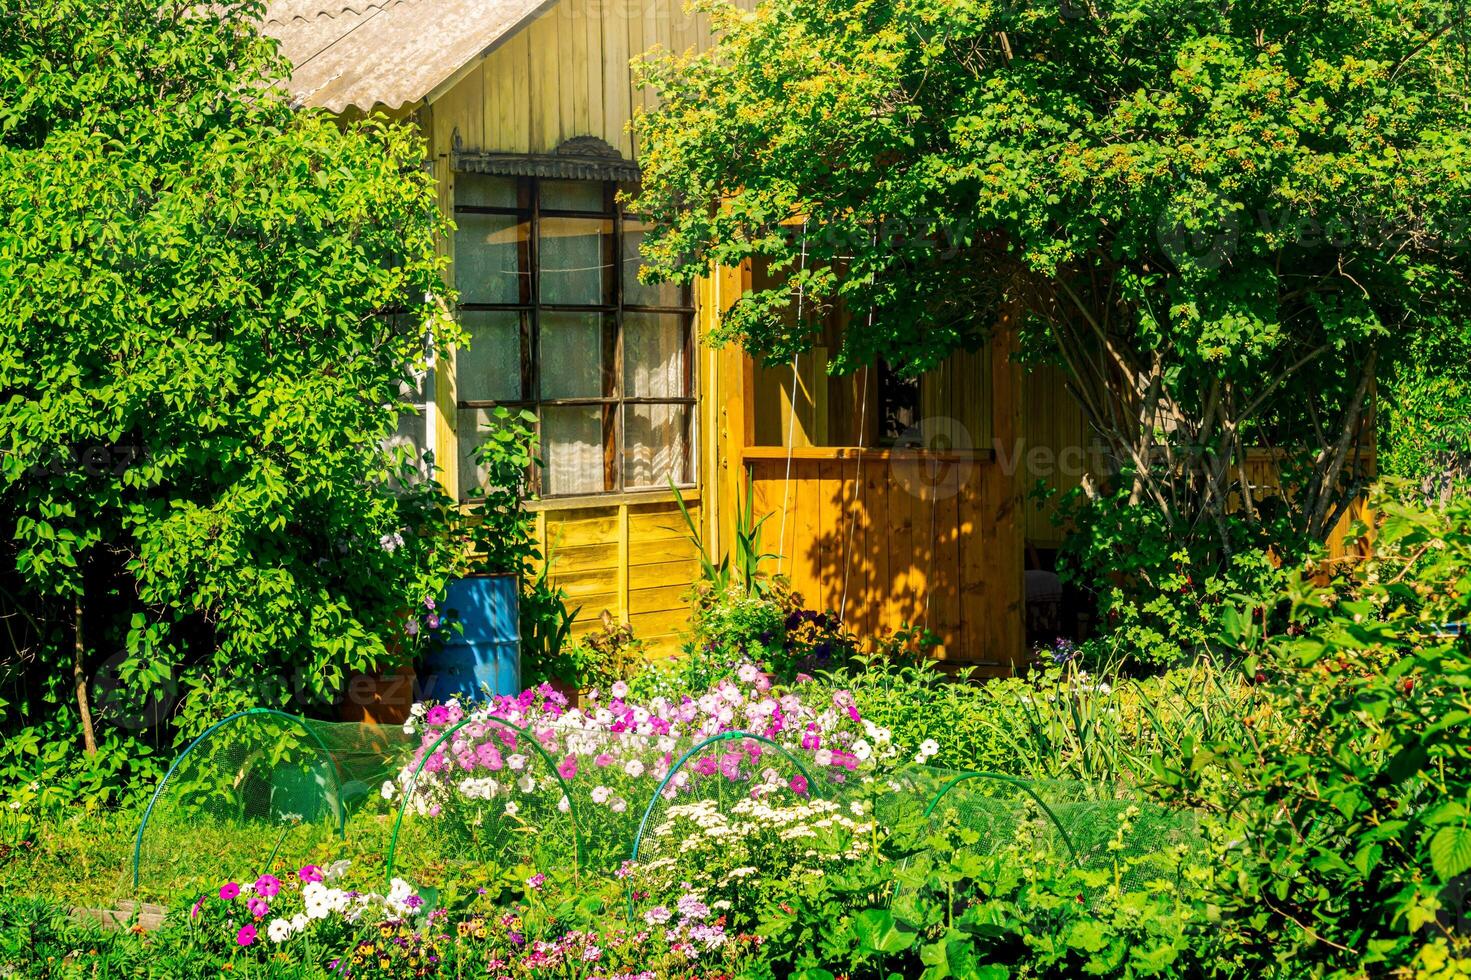 by hus med trädgård på en solig sommar dag foto